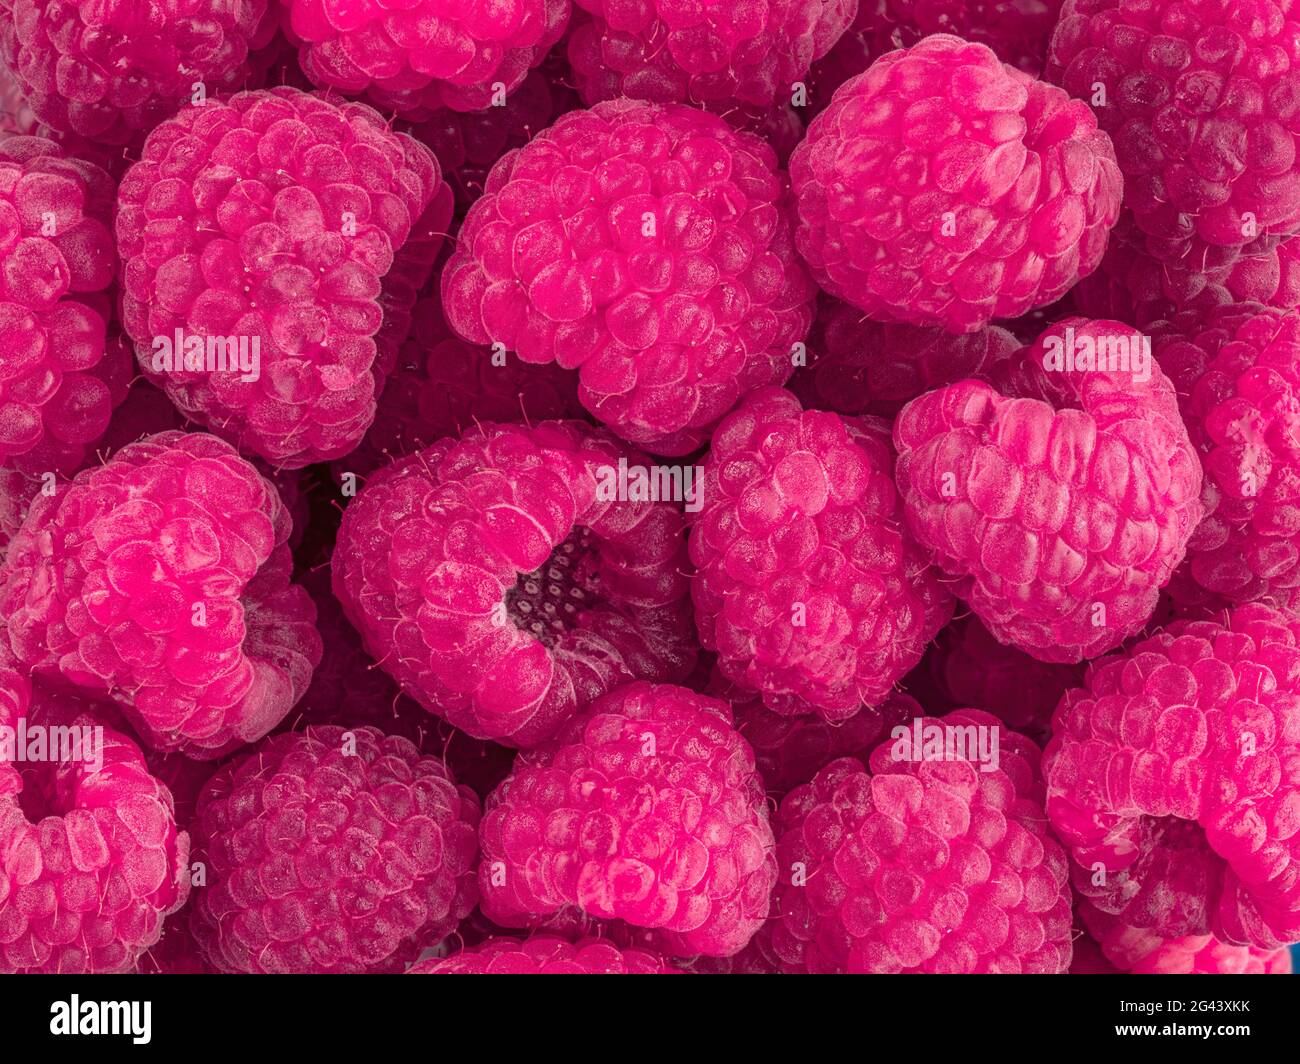 Full frame of red raspberries Stock Photo